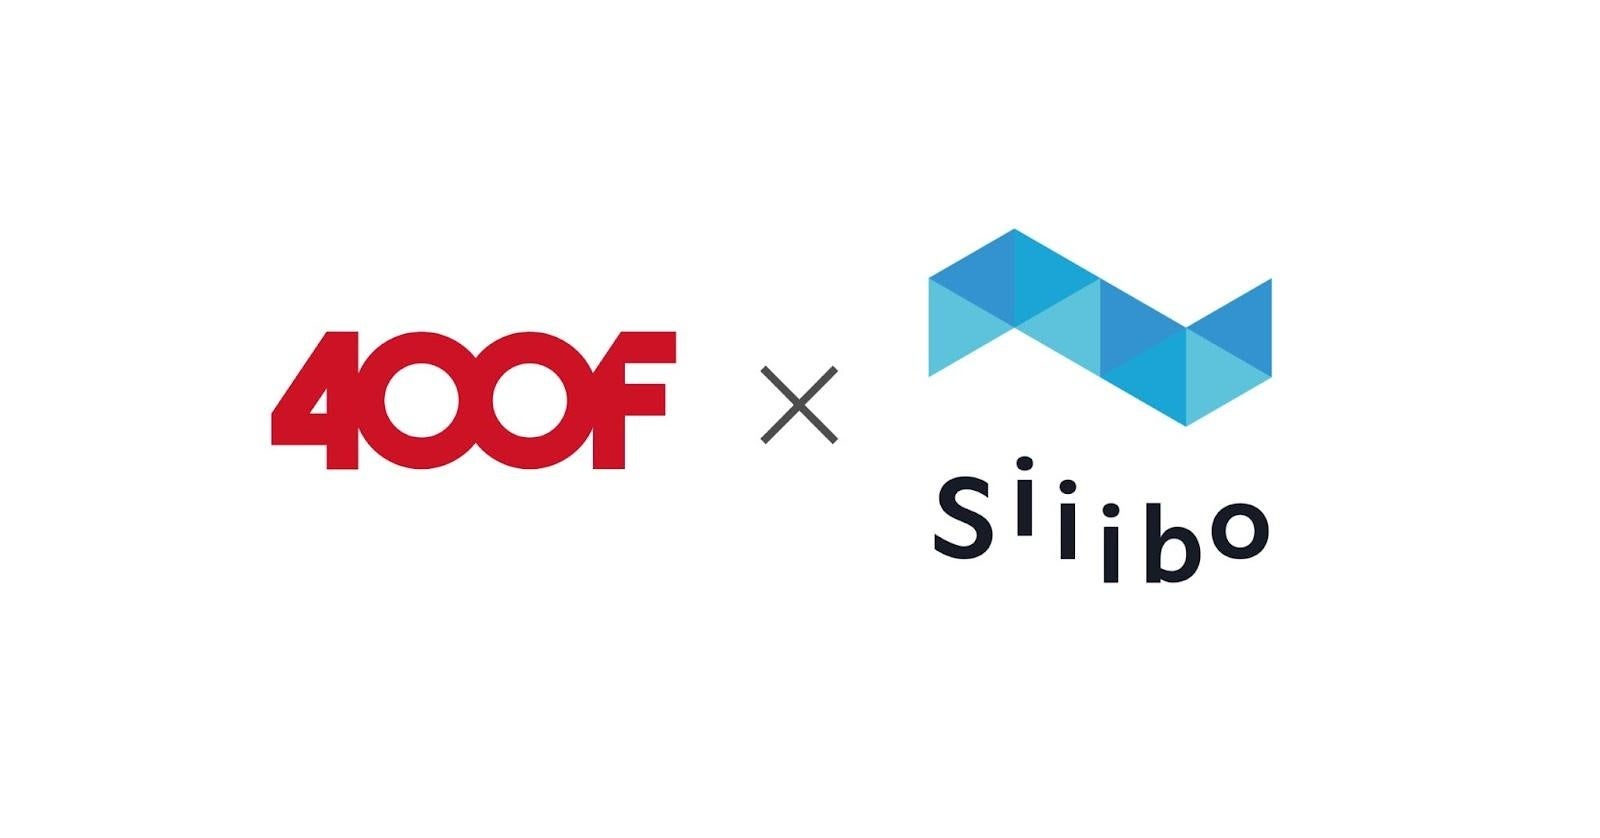 社債投資サービス「Siiibo」、400Fと連携し、ユーザー向けに多様な企業の社債へオンライン投資の機会を創出へ